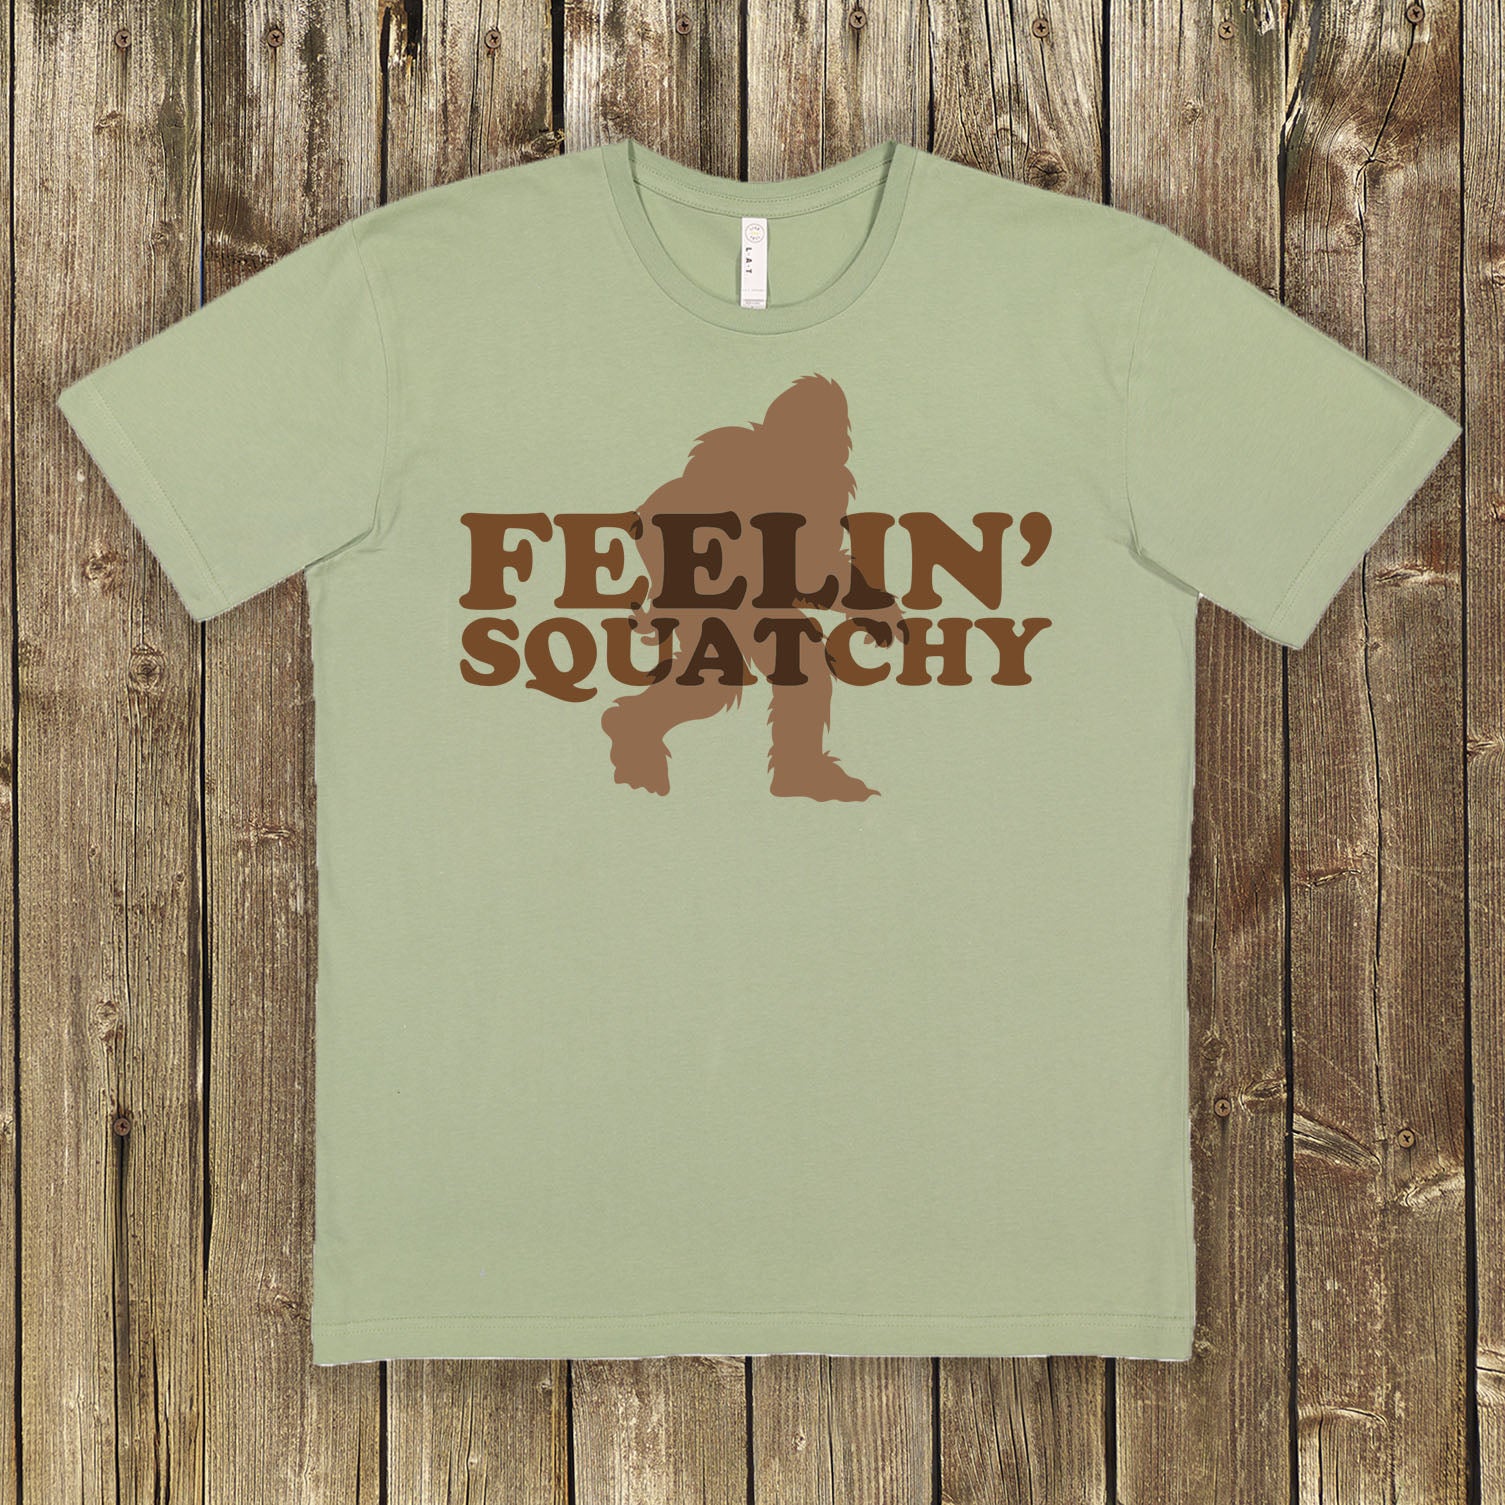 Feelin' Squatchy 2